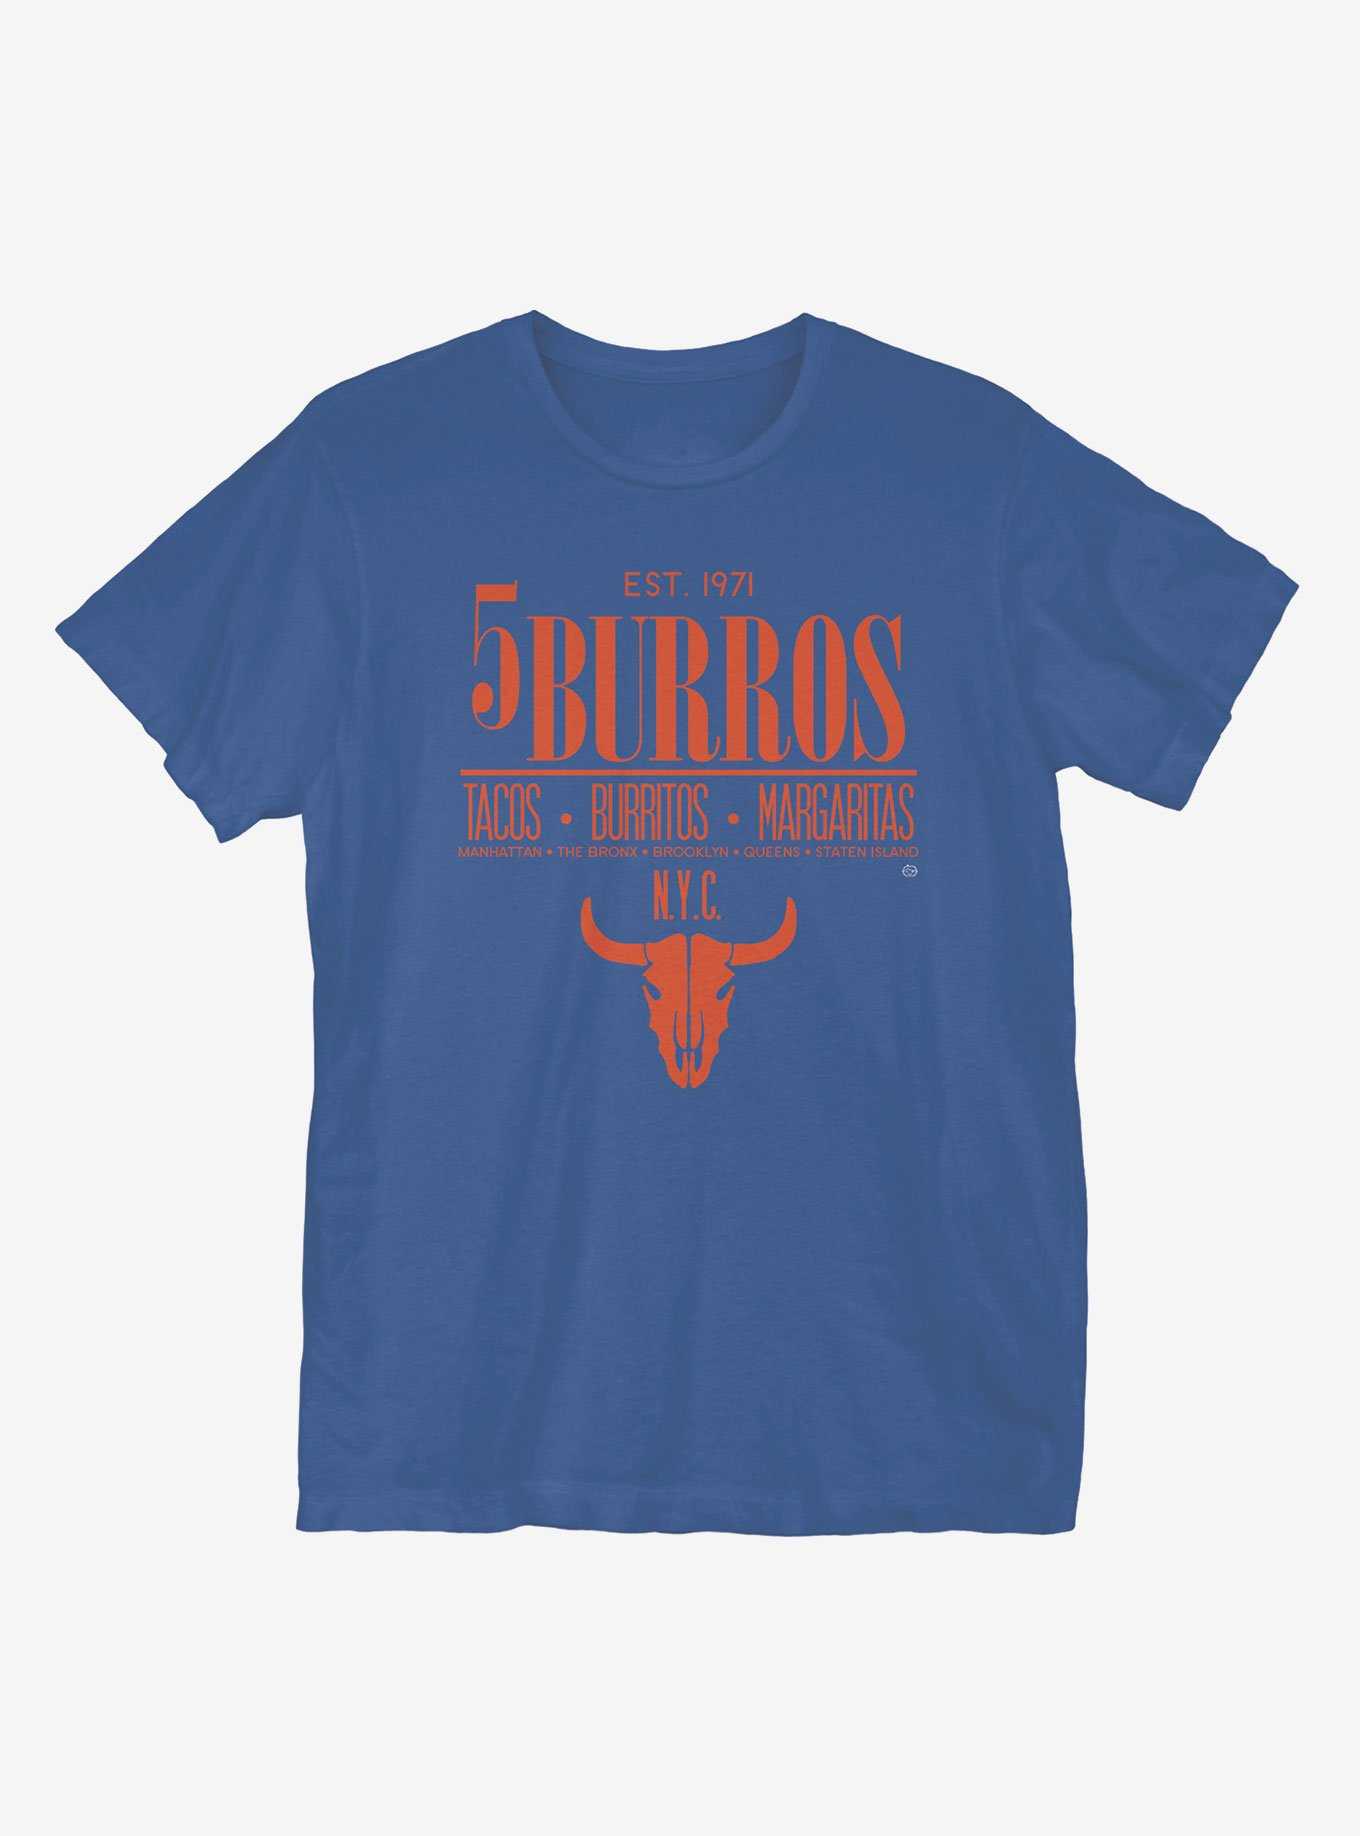 5Burros Tacos T-Shirt, , hi-res